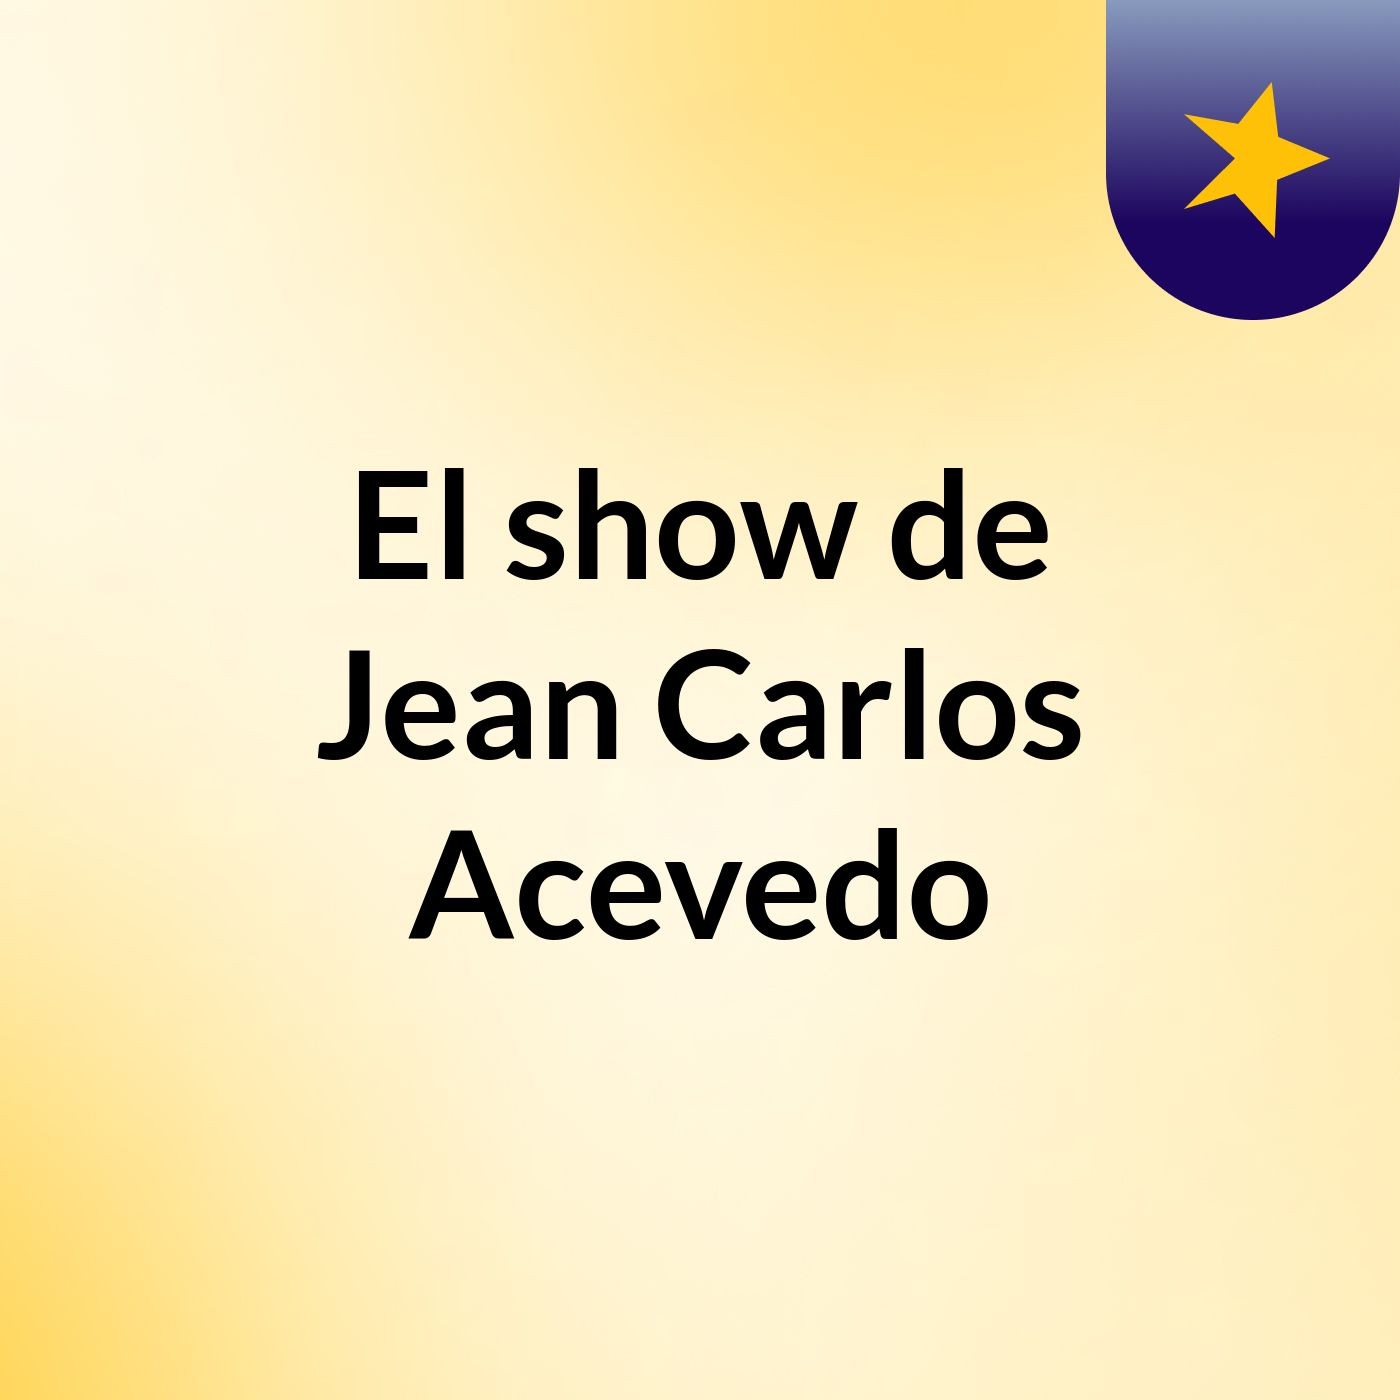 El show de Jean Carlos Acevedo